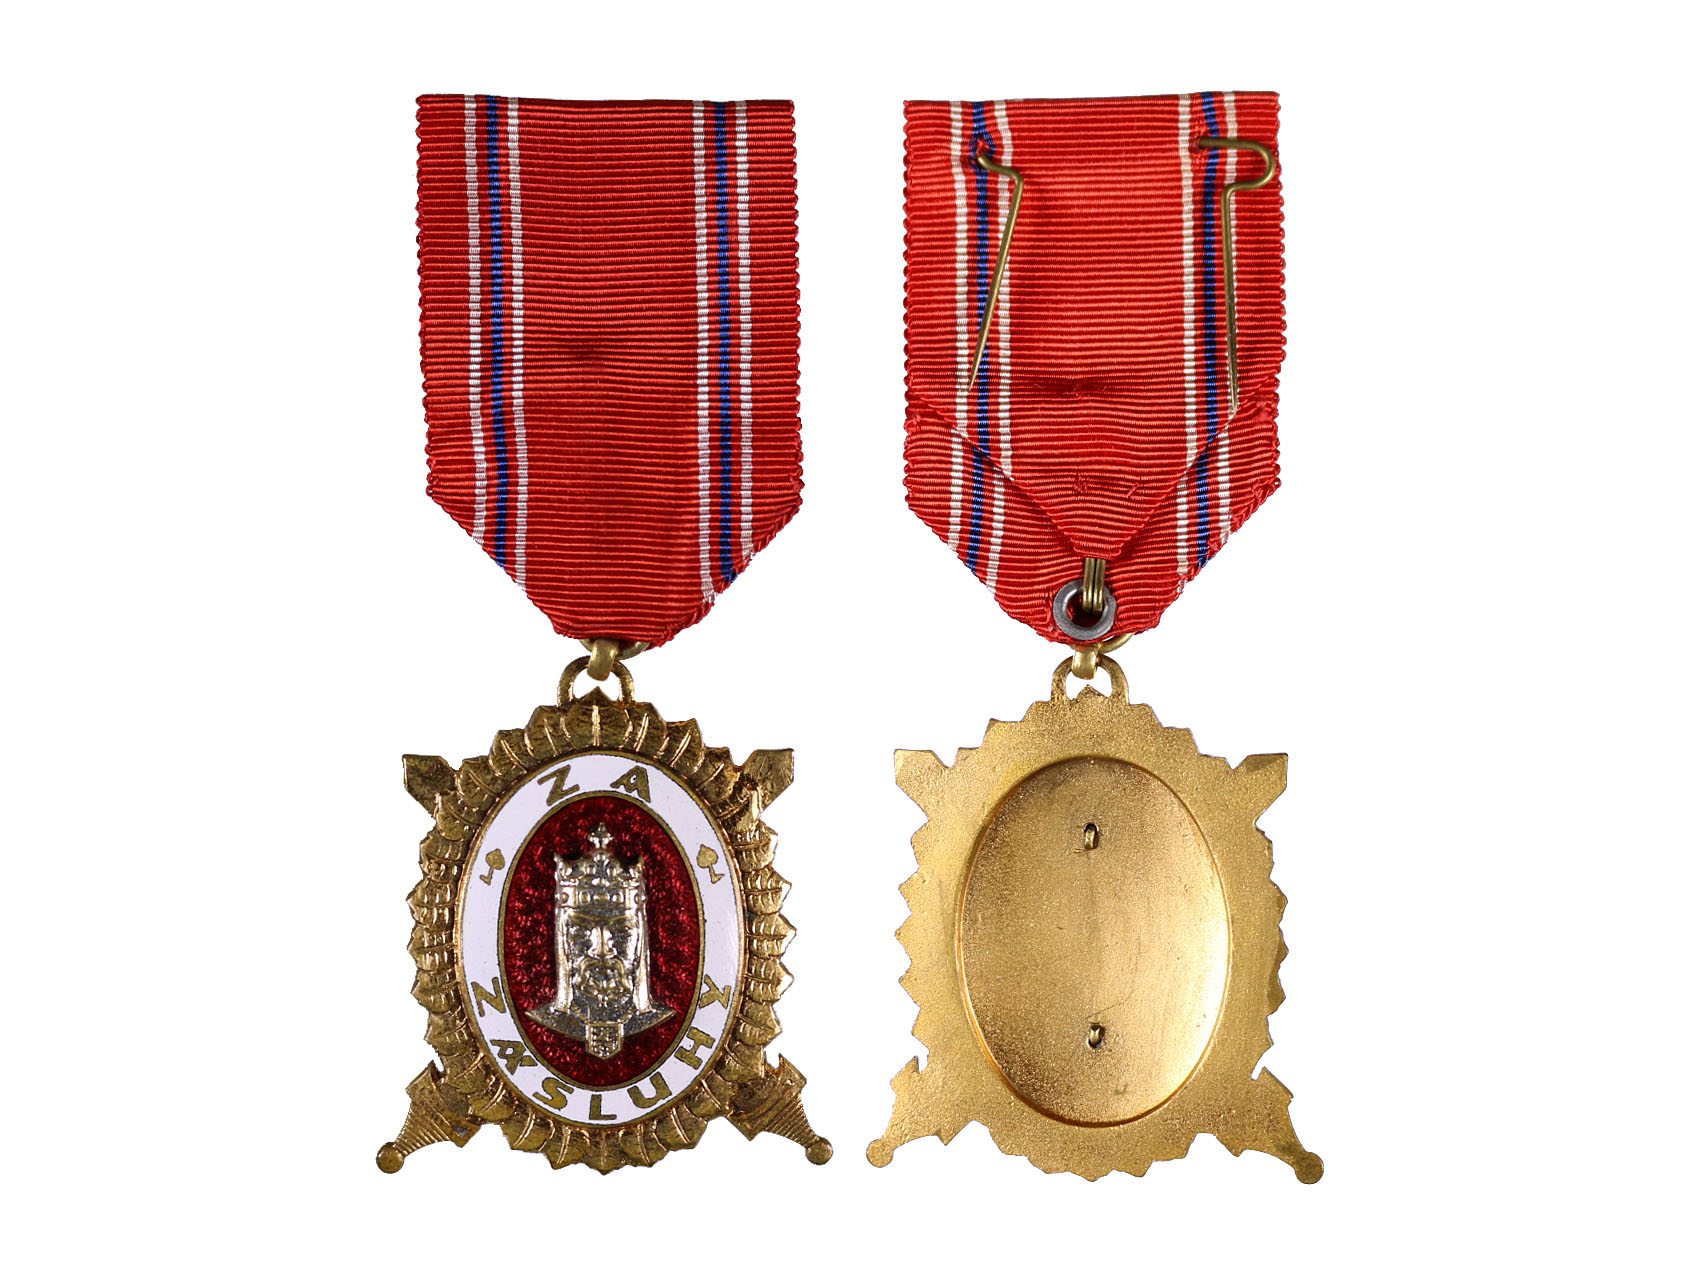 Diplomový čestný odznak krále Karla IV., stupeň čestný člen, Zlatý čestný odznak 2. třídy za civilní zásluhy, typ 1945-1949, N96a2b